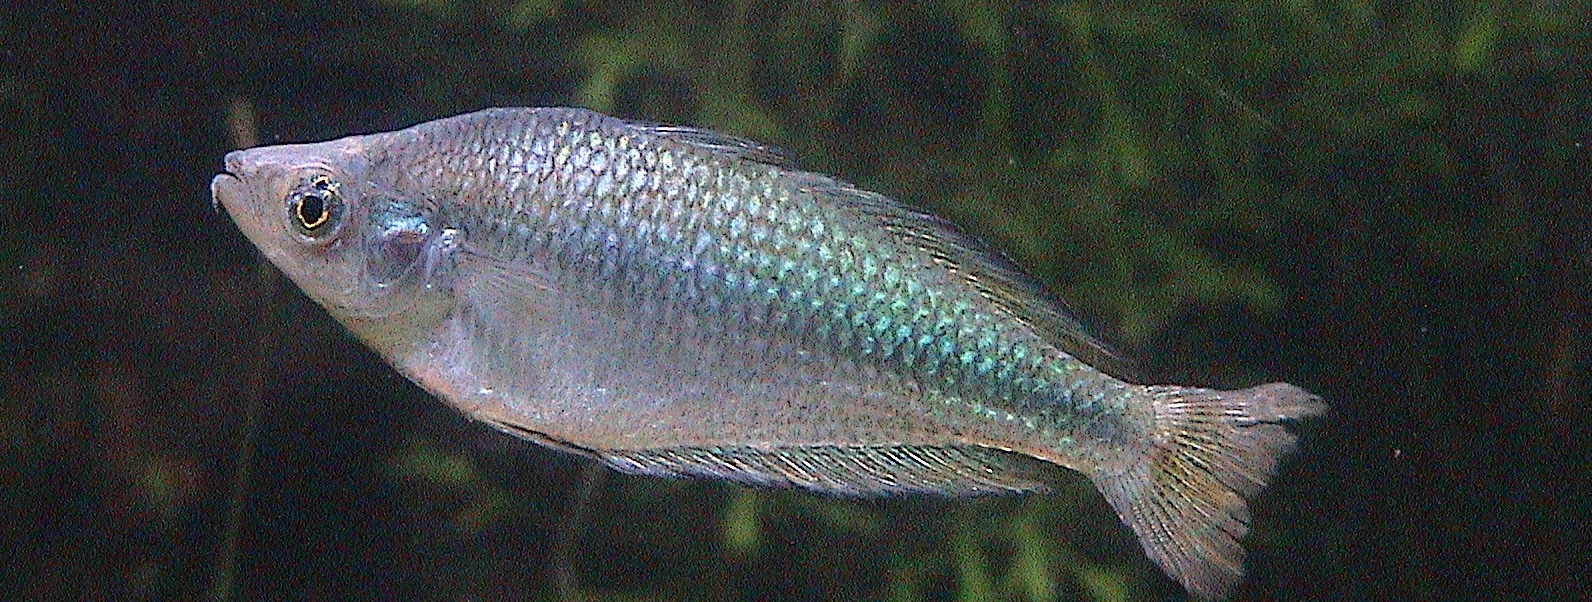 murray river fish